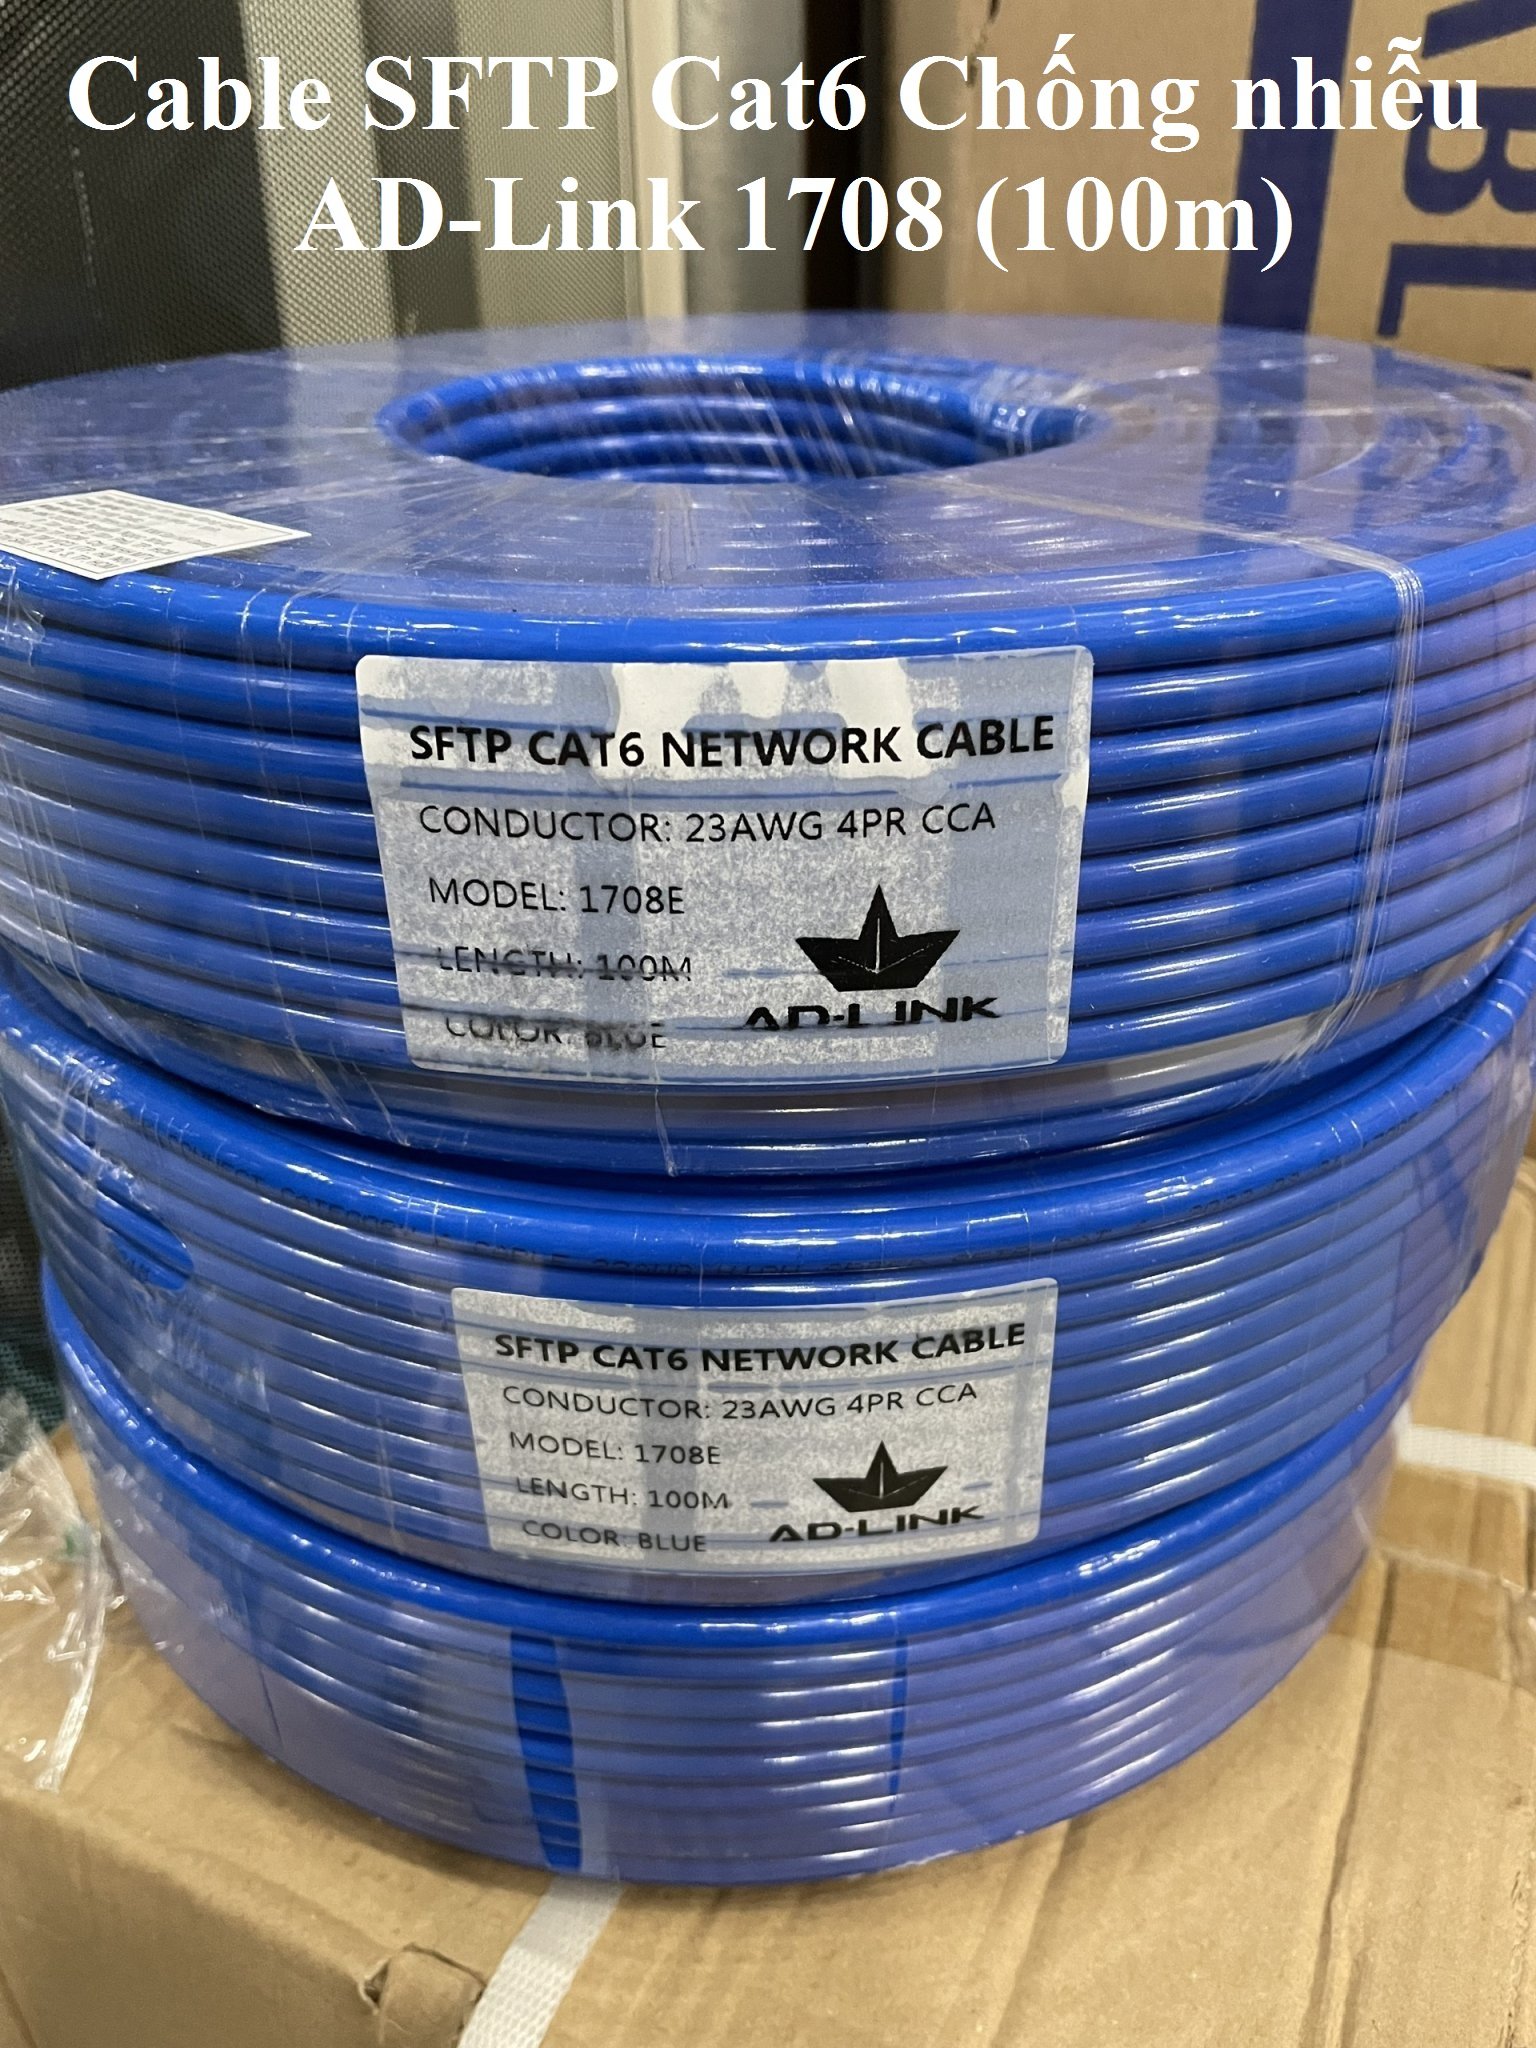 Cáp mạng chống nhiễu Cable STP Cat6 AD-Link 1708 (100m) Xanh  (Chống nhiễu)